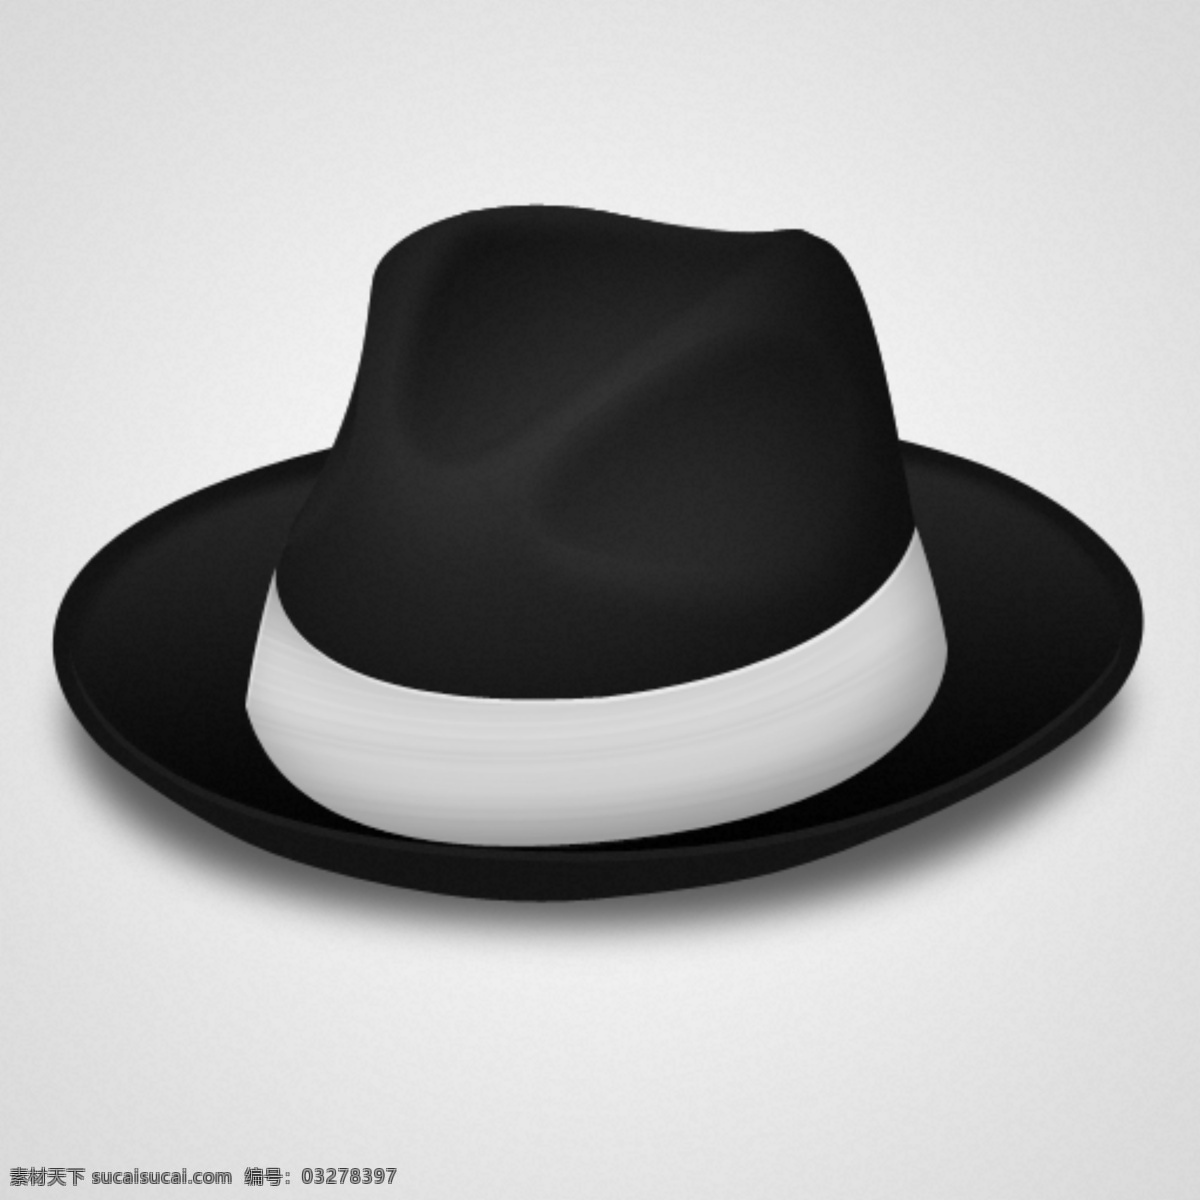 真实 黑帮 帽子 头巾 web 高分辨率 接口 免费 清洁 用户界面 时尚的 现代的 原始的 质量 新鲜的 设计设计新的 hd 元素 ui元素 详细的 歹徒的帽子 歹徒 黑色的黑帽 白色的 30三十年代 杂项 矢量图